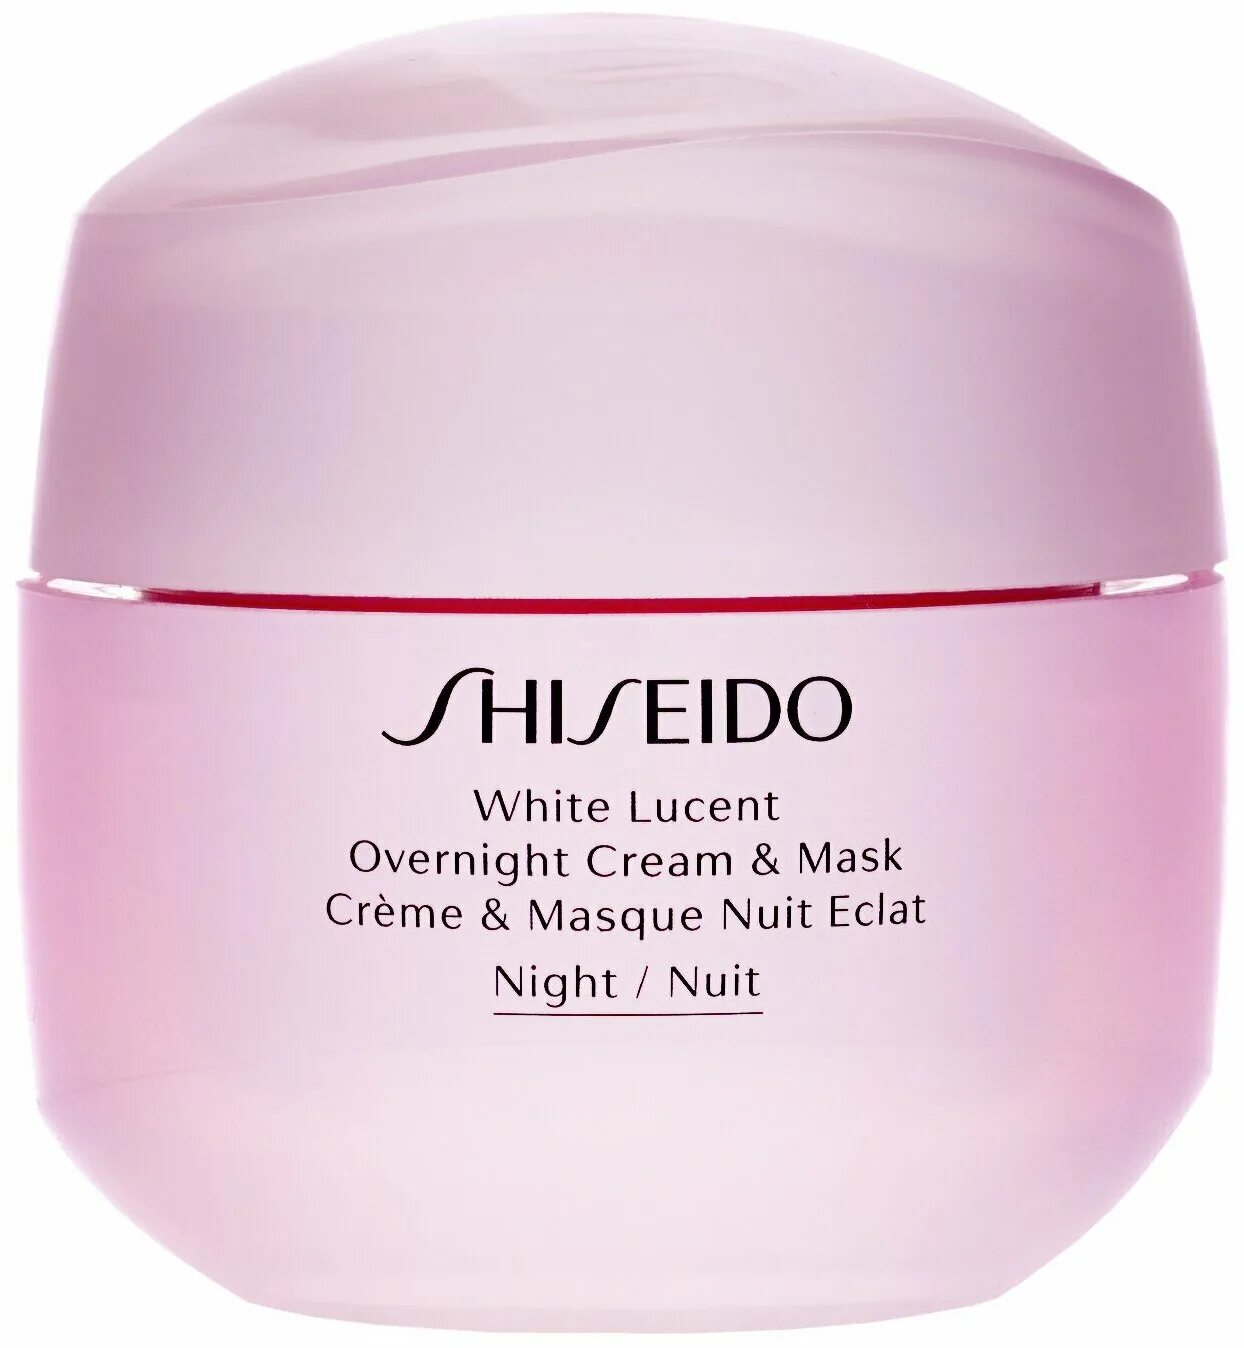 Ночная маска крем отзывы. Shiseido ночная маска. Ночной крем шисейдо. Shiseido White Lucent. Shiseido ночная восстанавливающая маска.